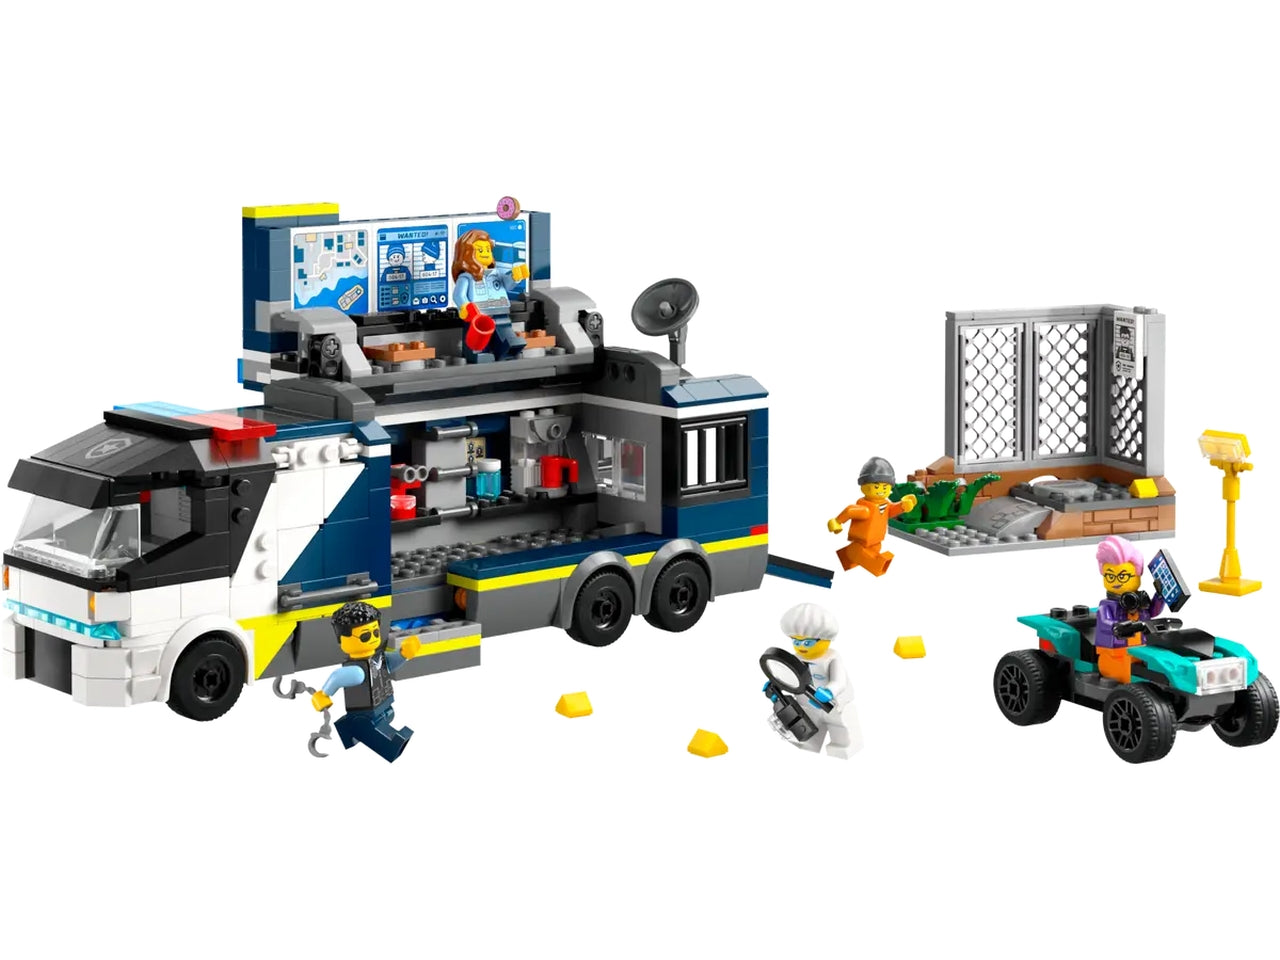 Lego city police camion laboratorio mobile della polizia